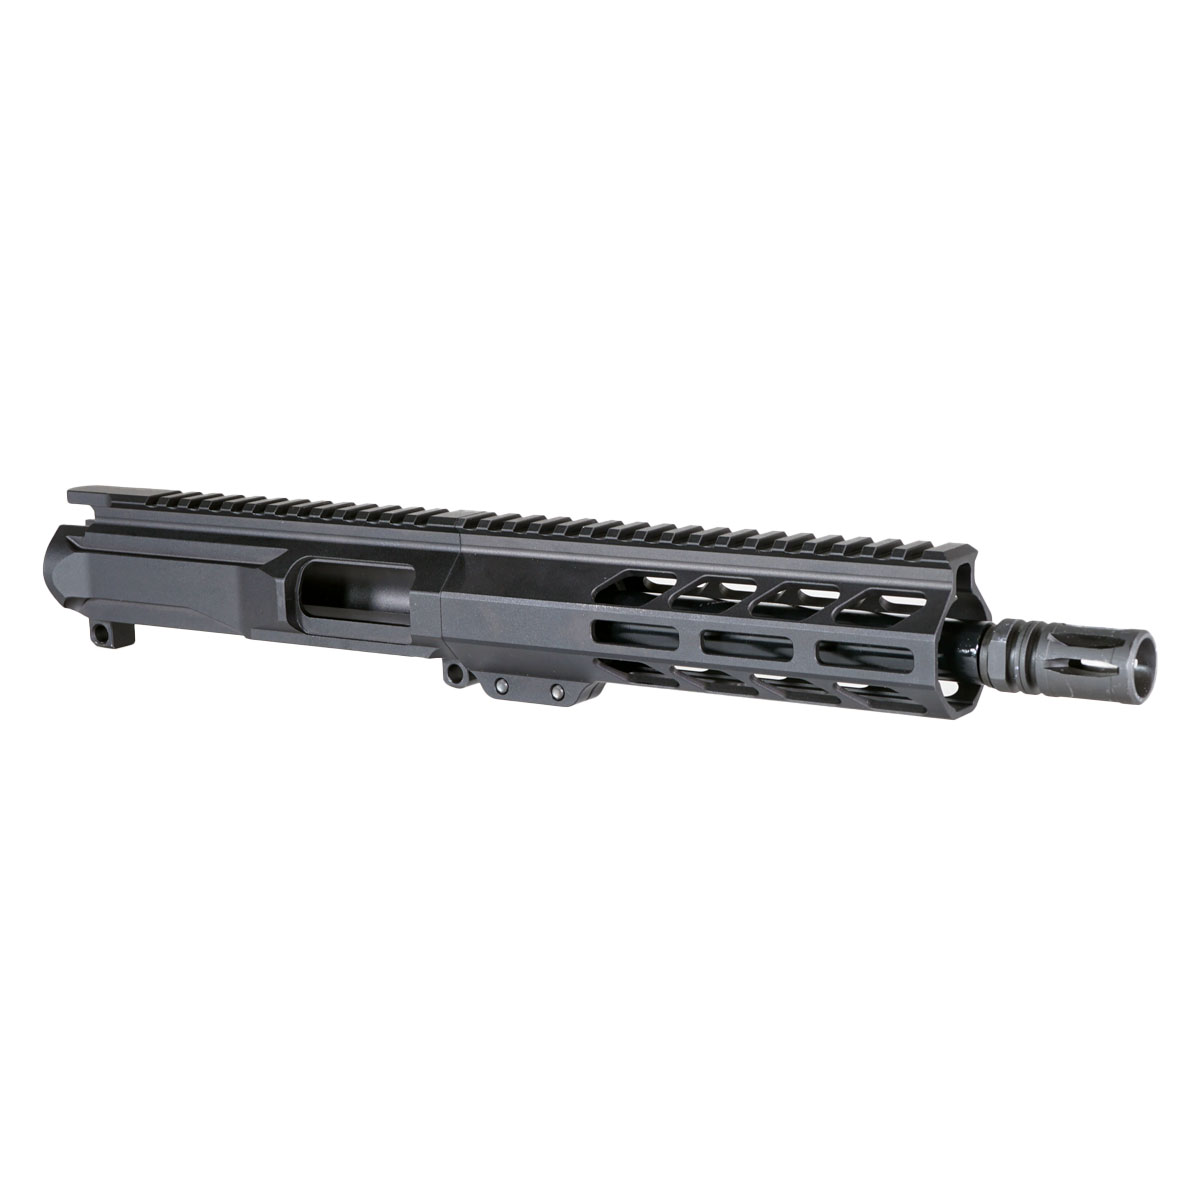 DTT 'Eternal Night Gen 2' 8.5-inch AR-15 9mm Nitride Pistol Upper Build Kit